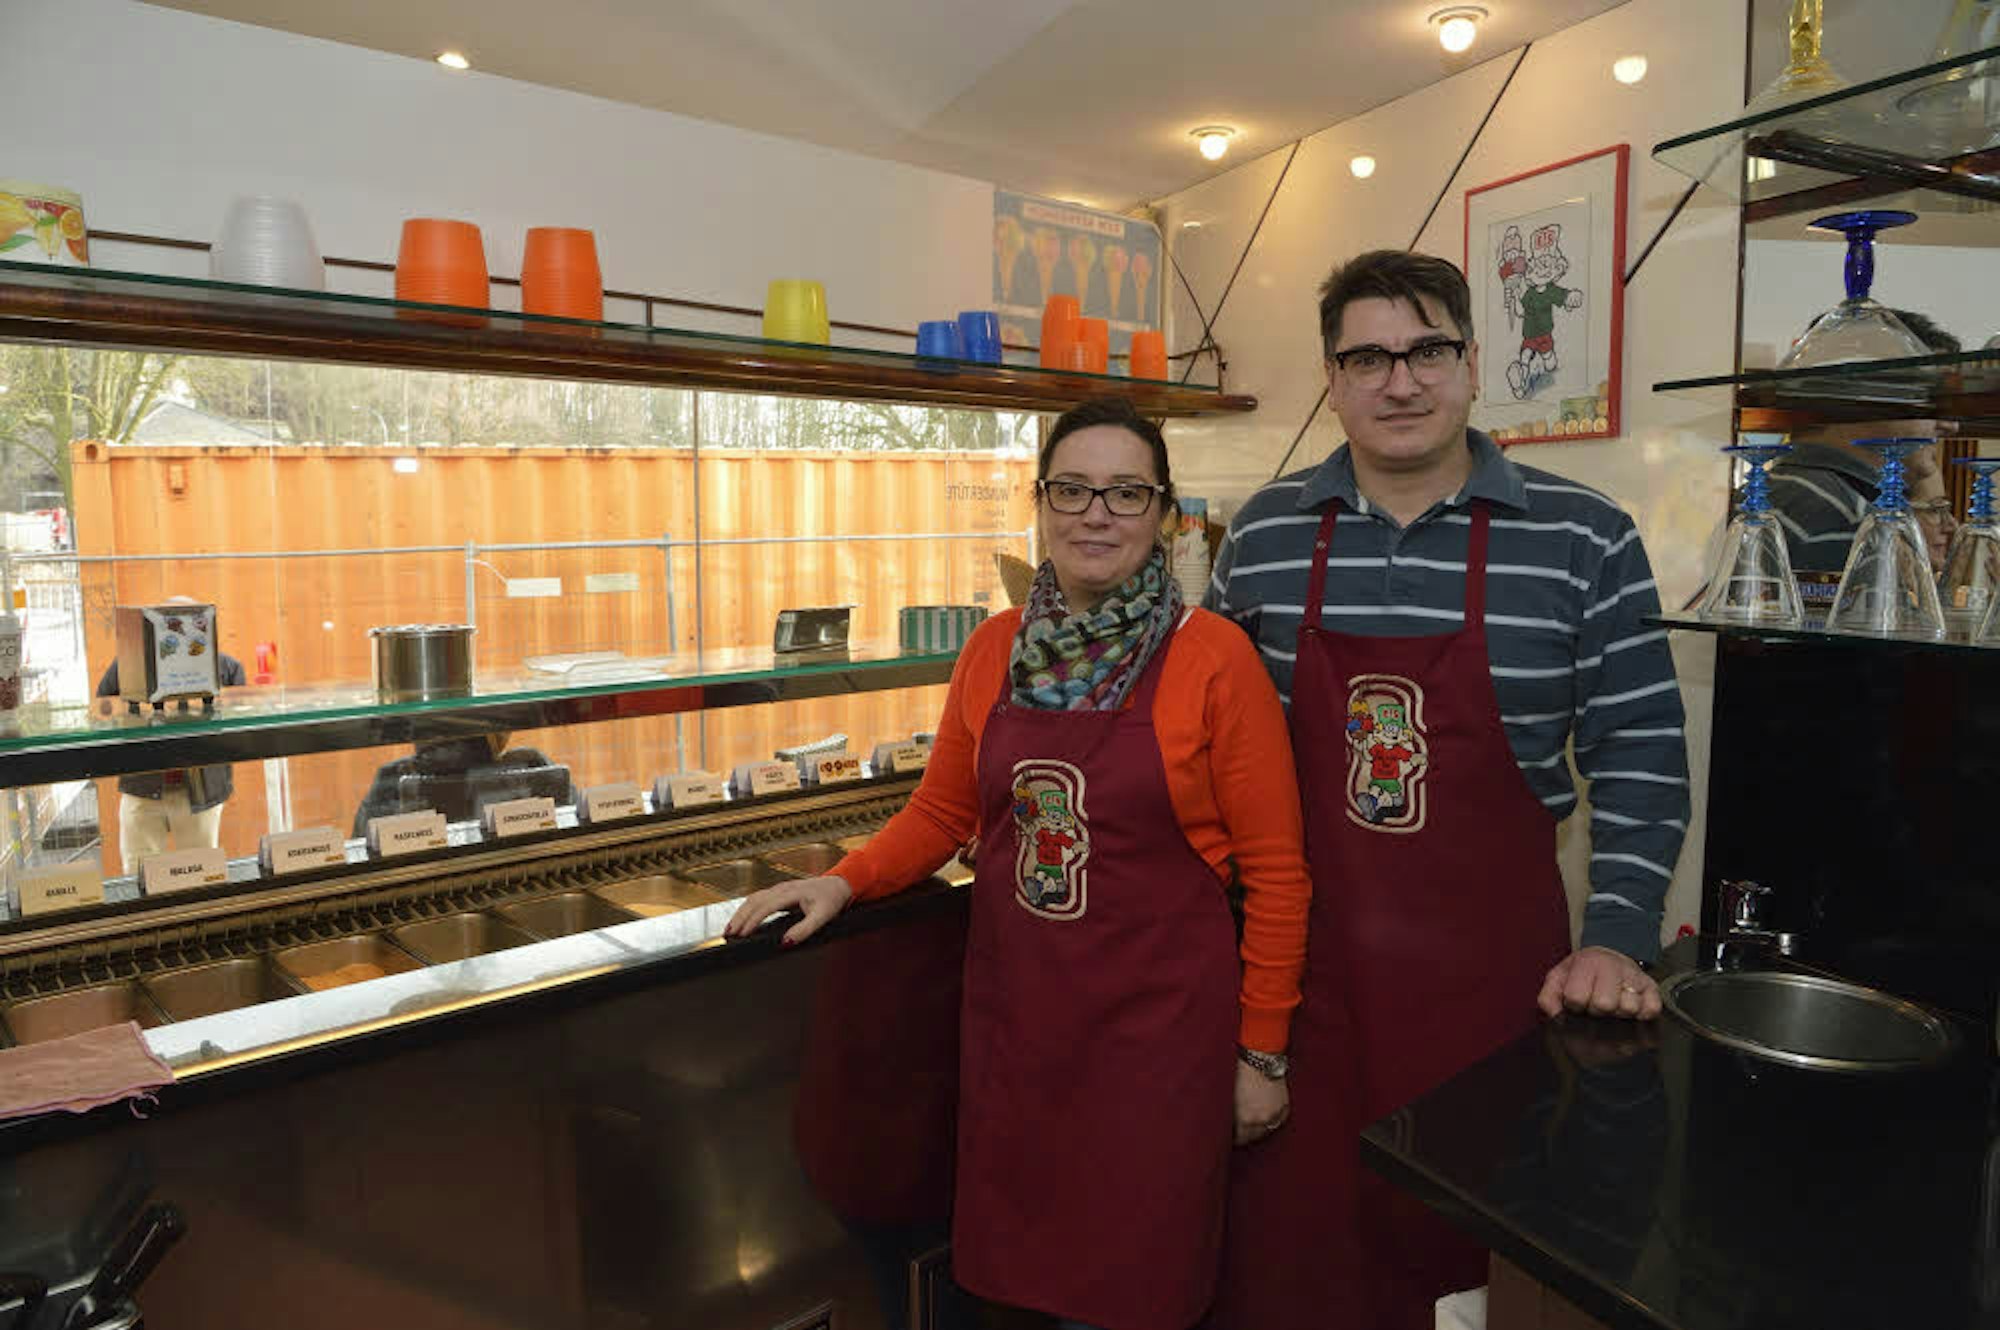 Die Besitzer des Eiscafés, Sonia und Simone Stefani, gegenüber dem Forumpark fürchten um ihre Existenz.